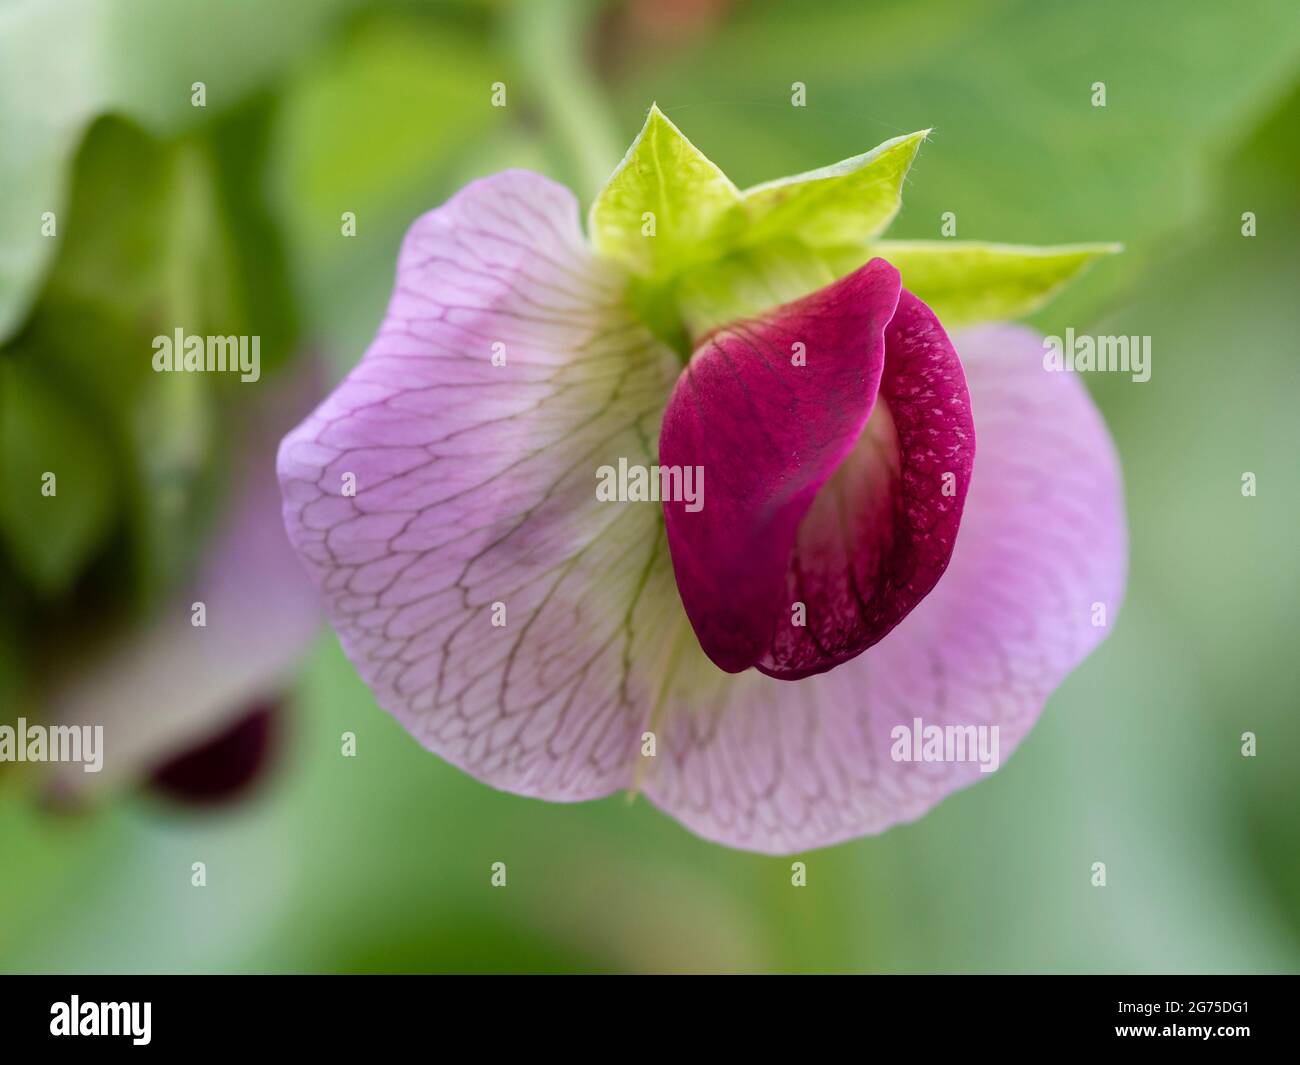 Flor púrpura y lila del guisante morado de mangoto, Pisum sativum 'Shiraz' Foto de stock